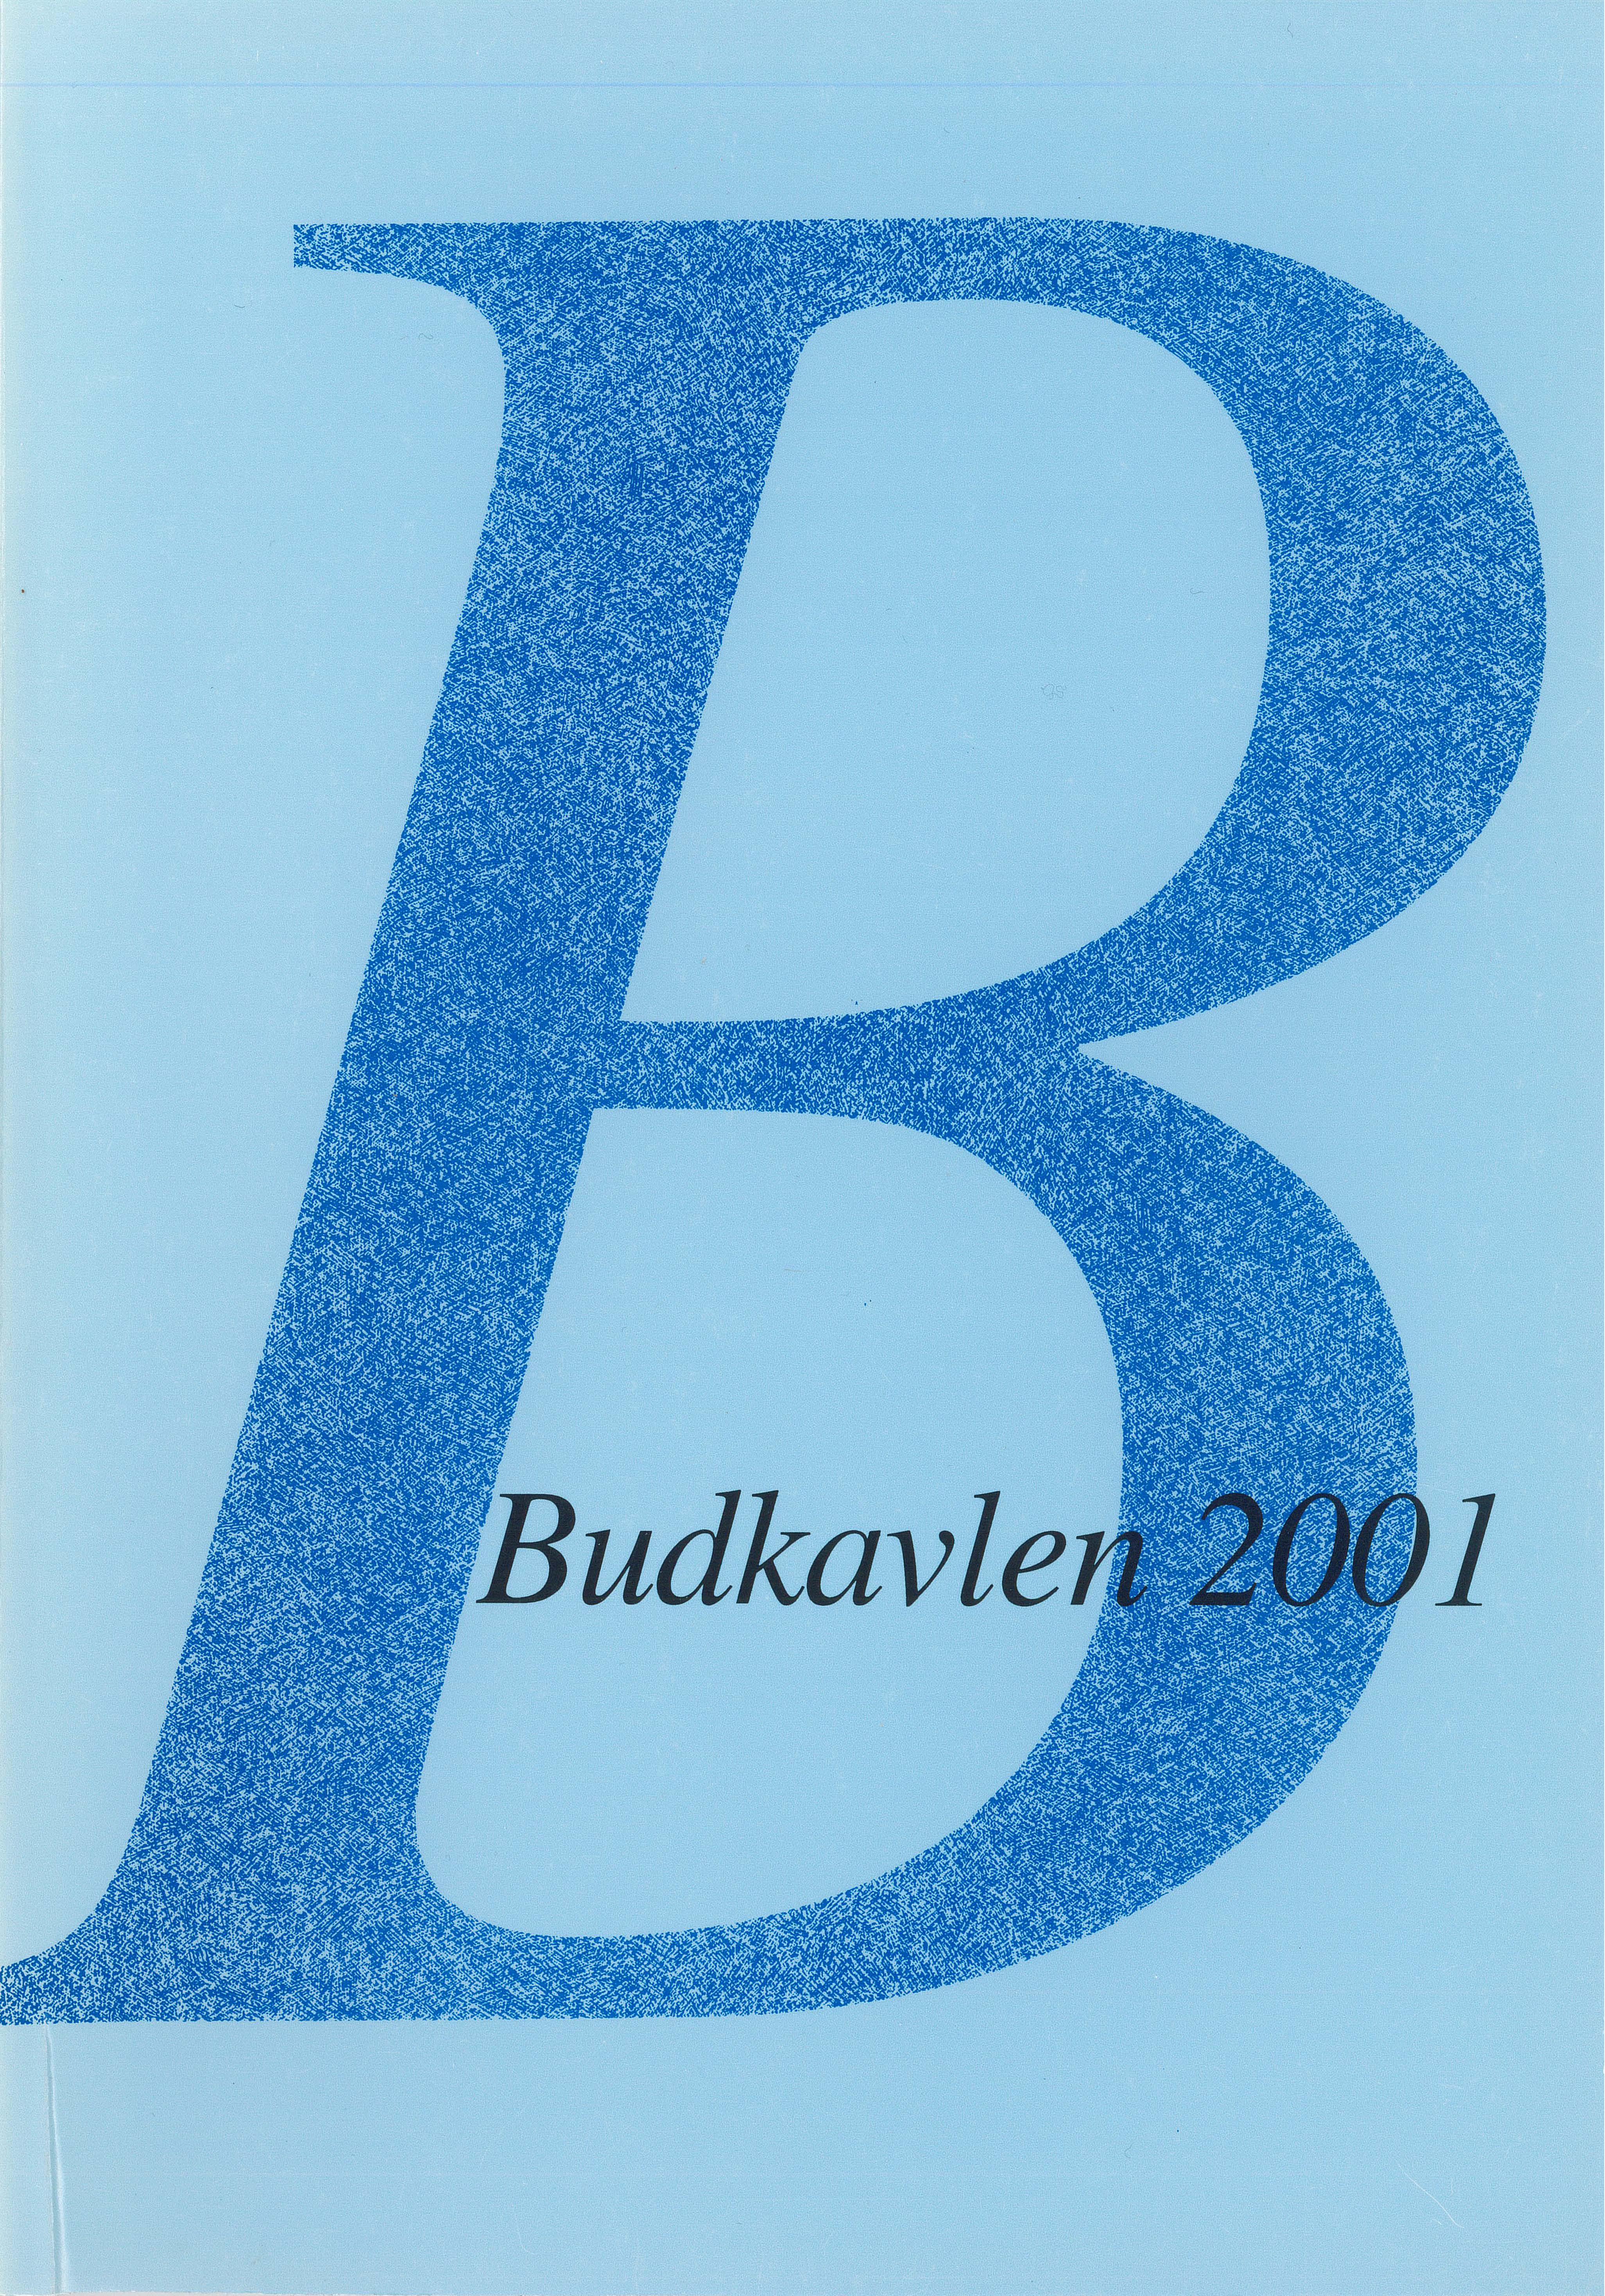 Pärmbild för Budkavlen 2001.